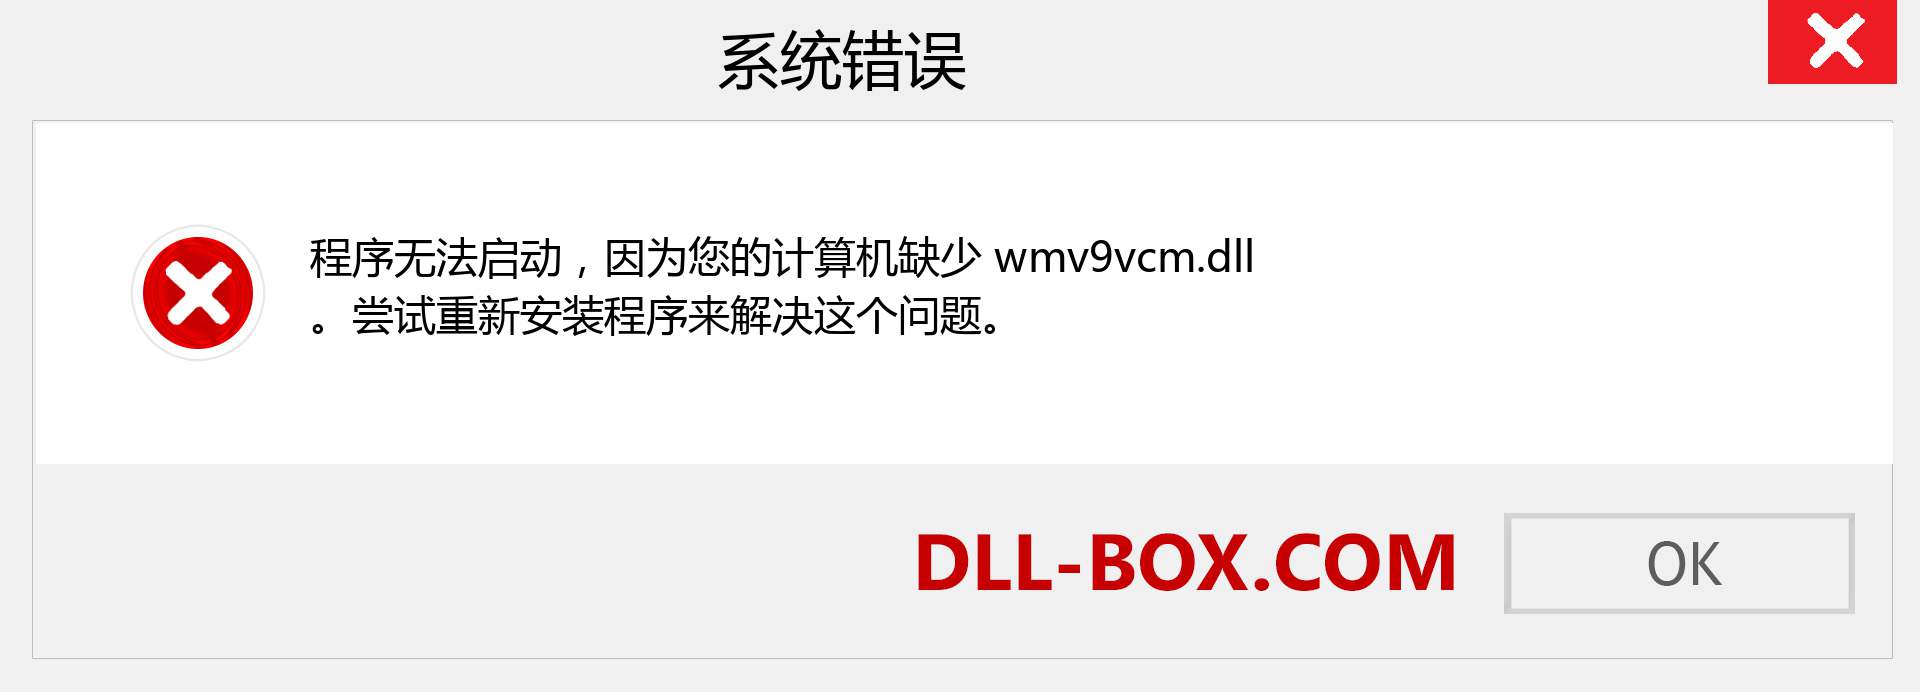 wmv9vcm.dll 文件丢失？。 适用于 Windows 7、8、10 的下载 - 修复 Windows、照片、图像上的 wmv9vcm dll 丢失错误